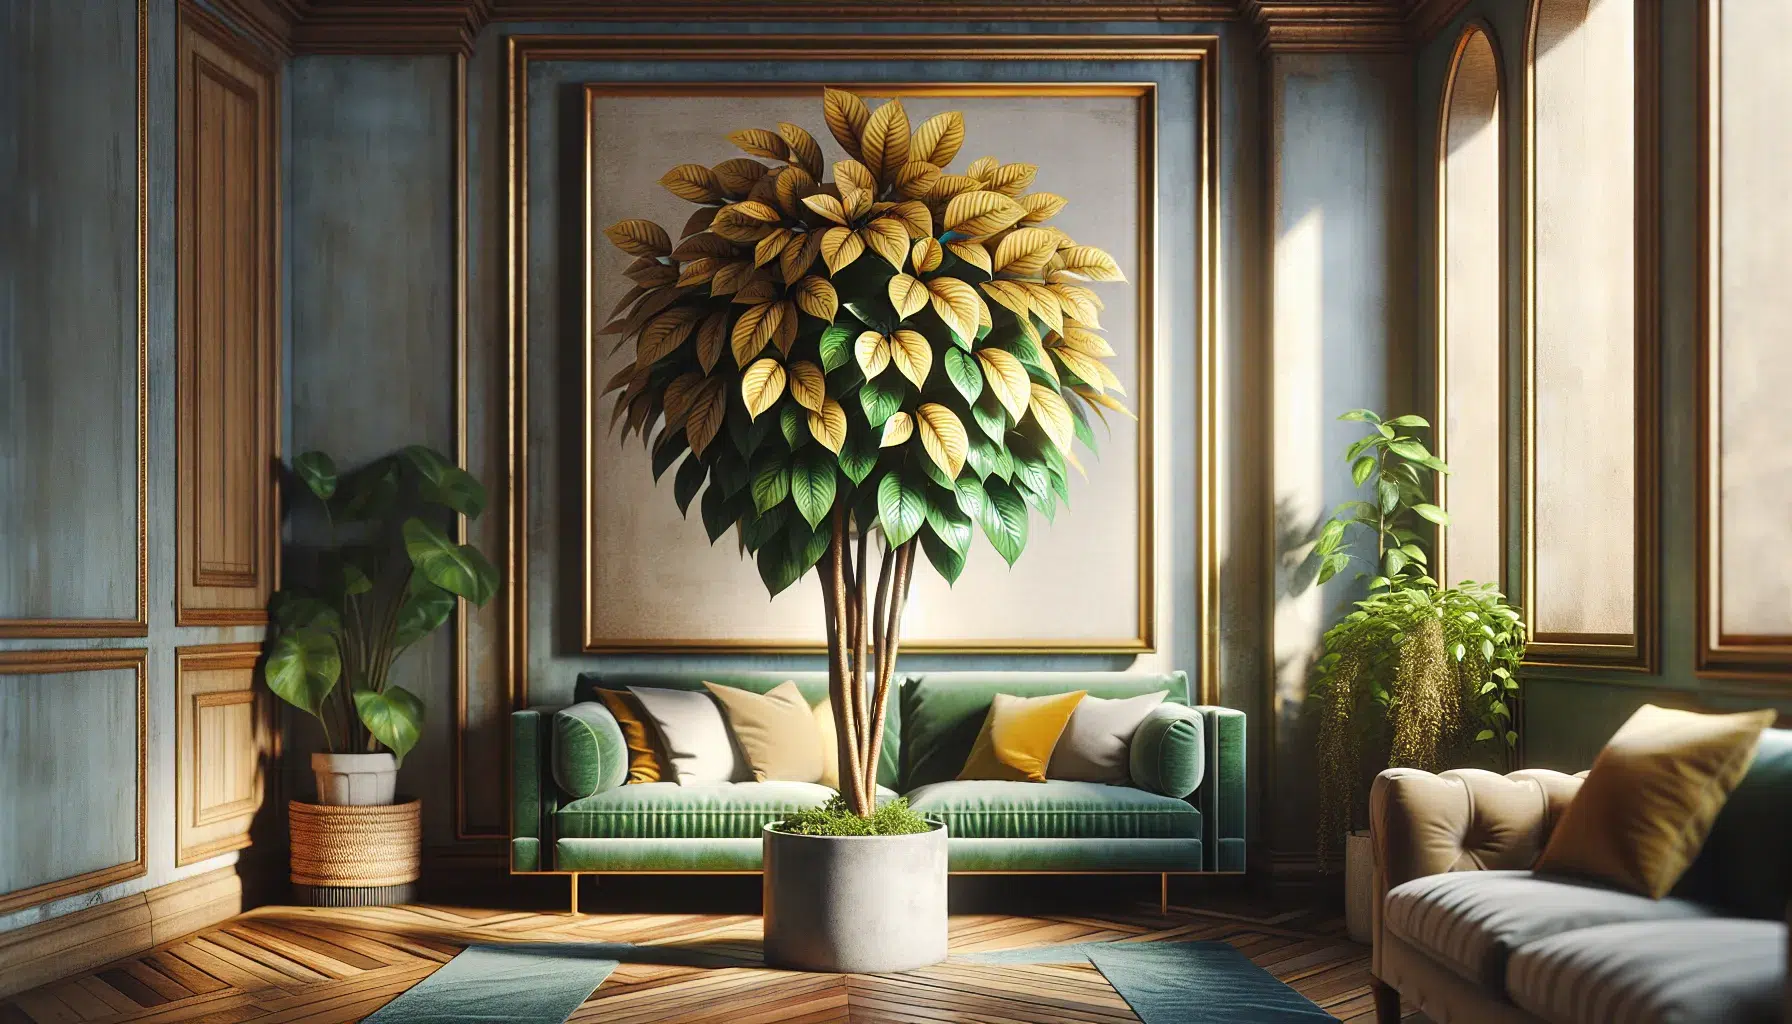 Imagen de una Schefflera Gold Capella, una planta de interior y exterior, mostrando su follaje verde y dorado en un entorno hogareño.